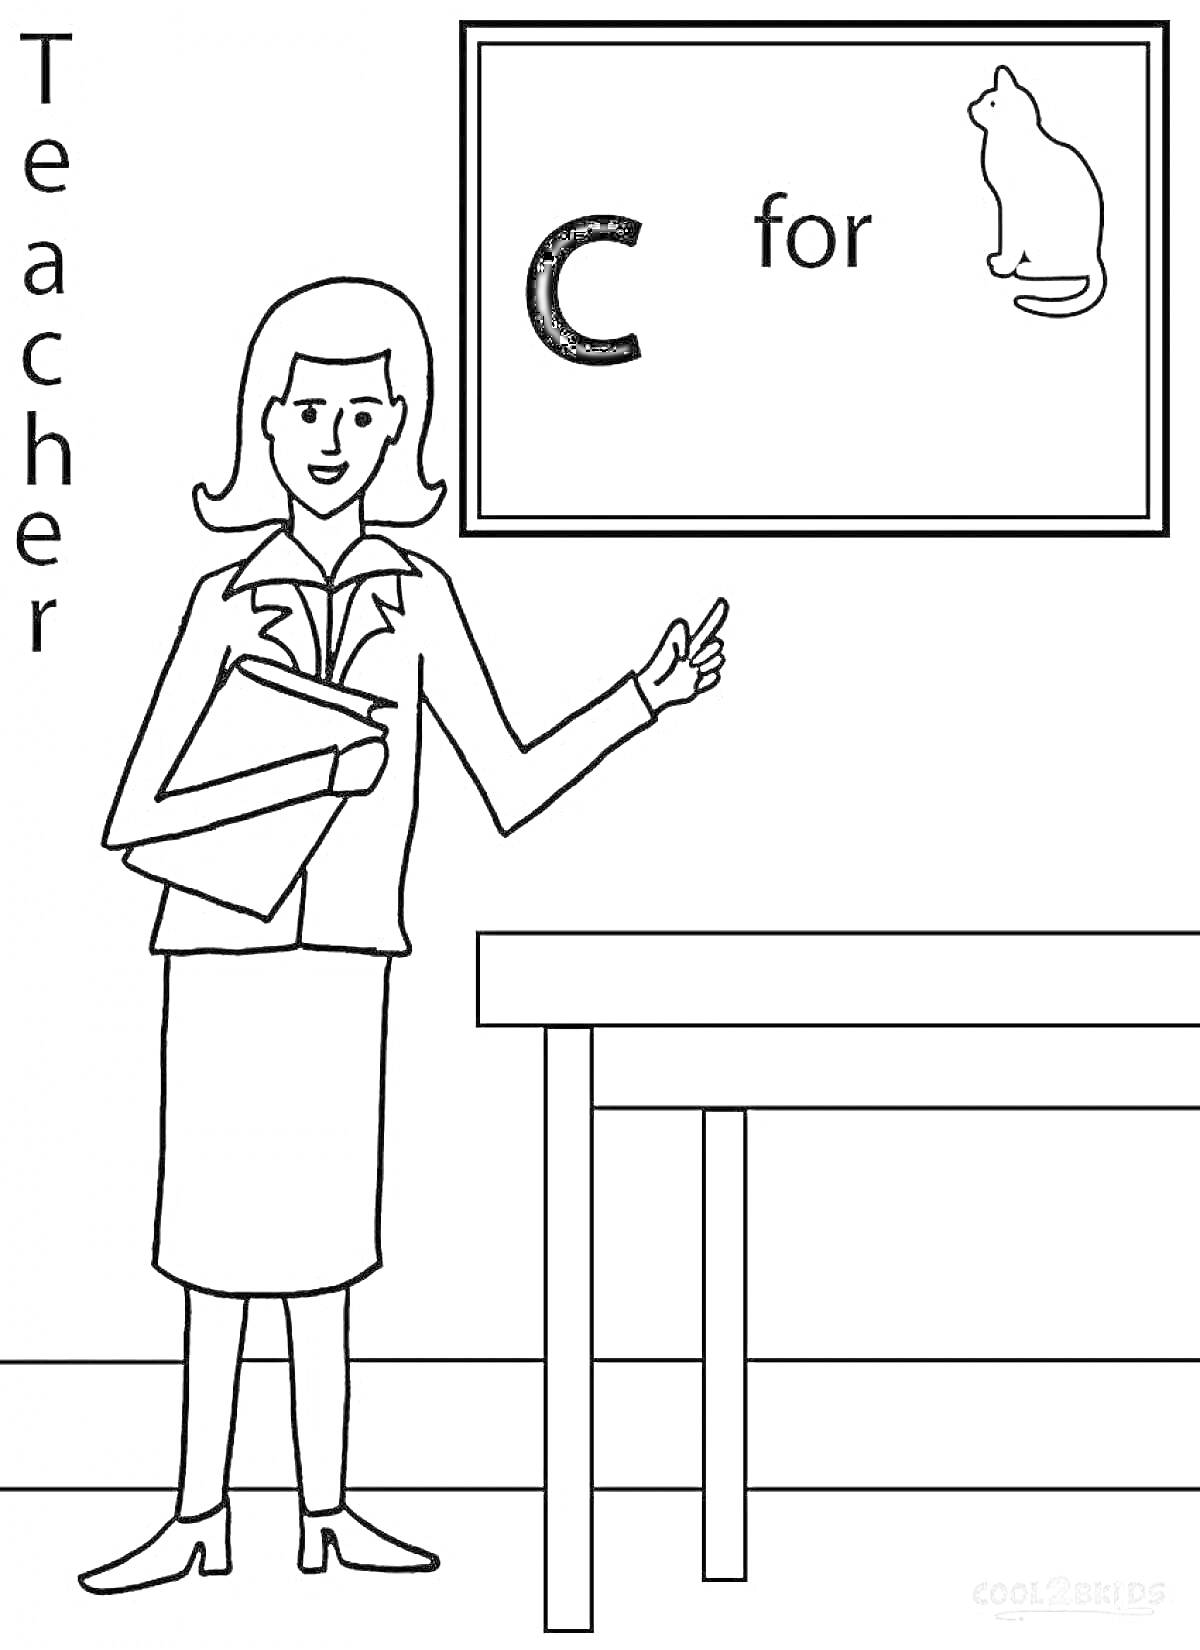 Раскраска Учитель у доски с книгами и плакатом, изображающим букву 